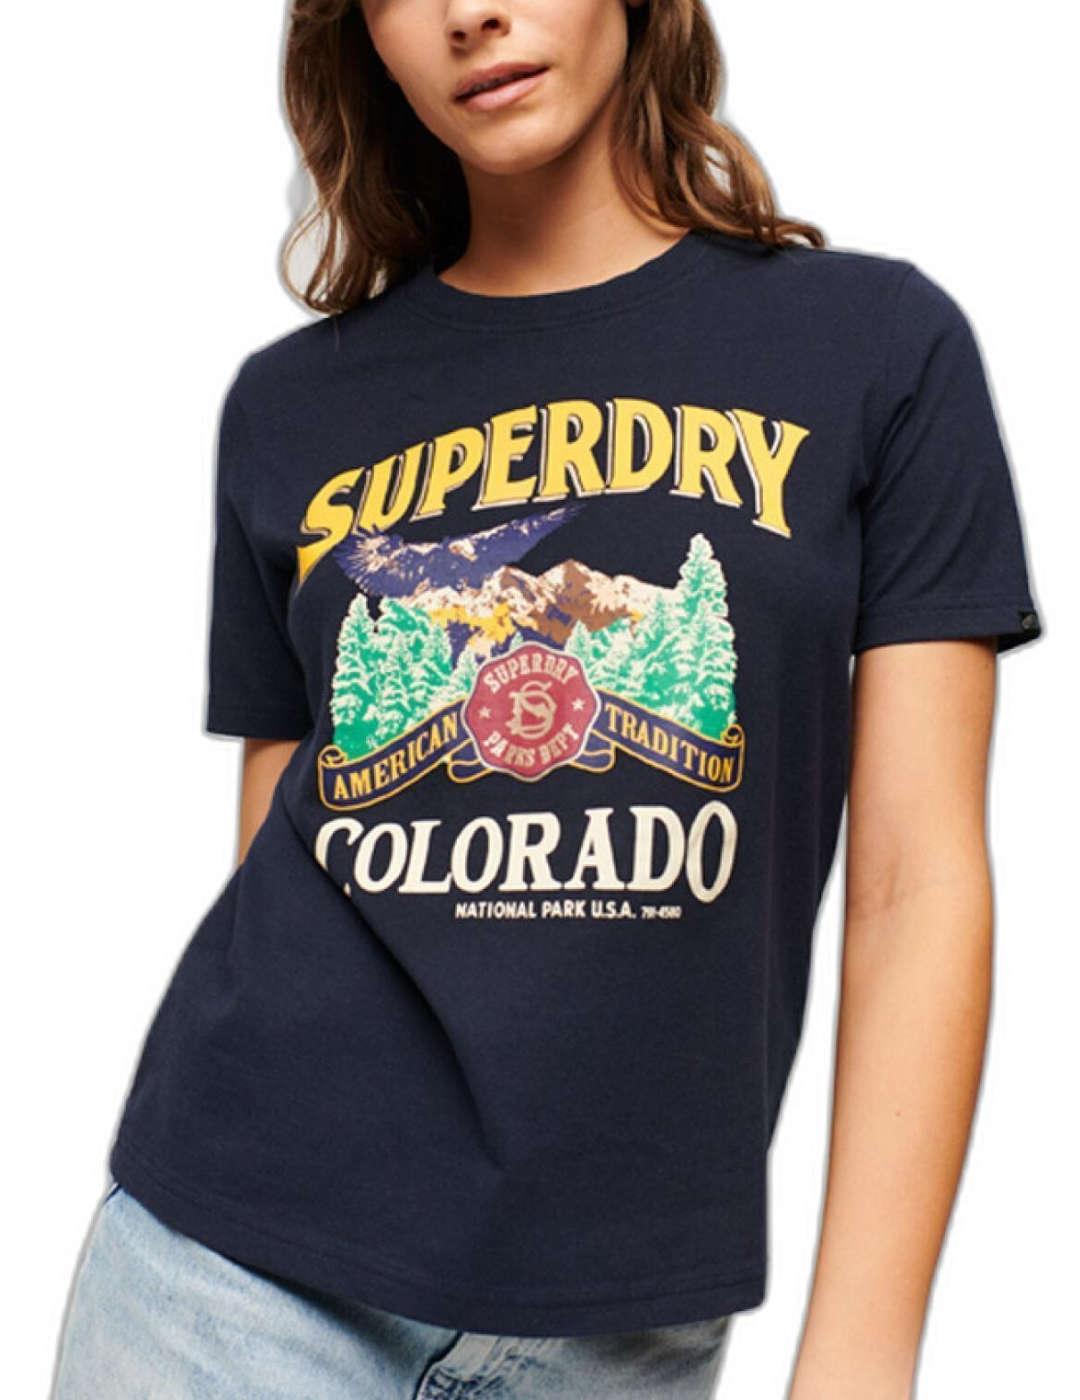 Camiseta Superdry Travel azul marino manga corta para mujer